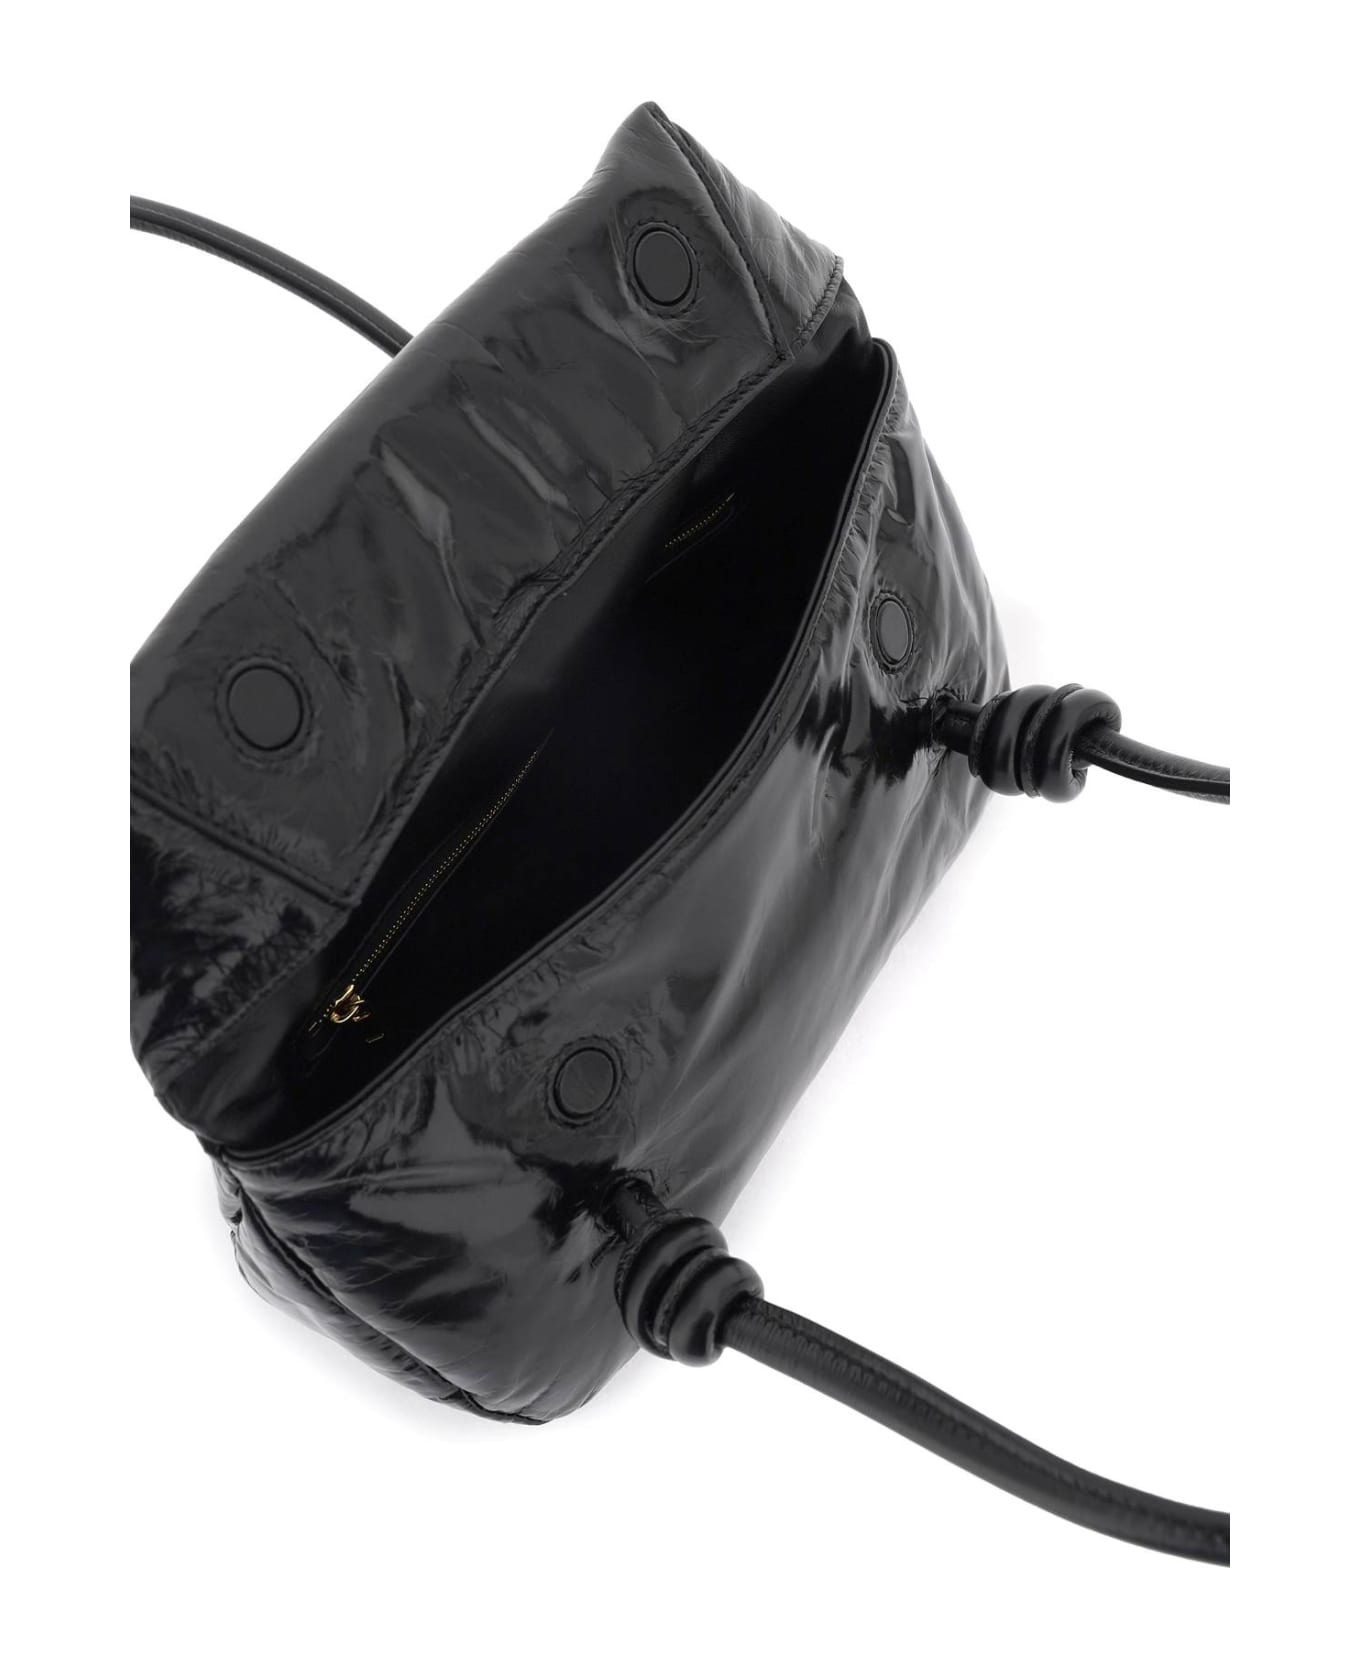 Jil Sander Black Leather Bag - 001 トートバッグ